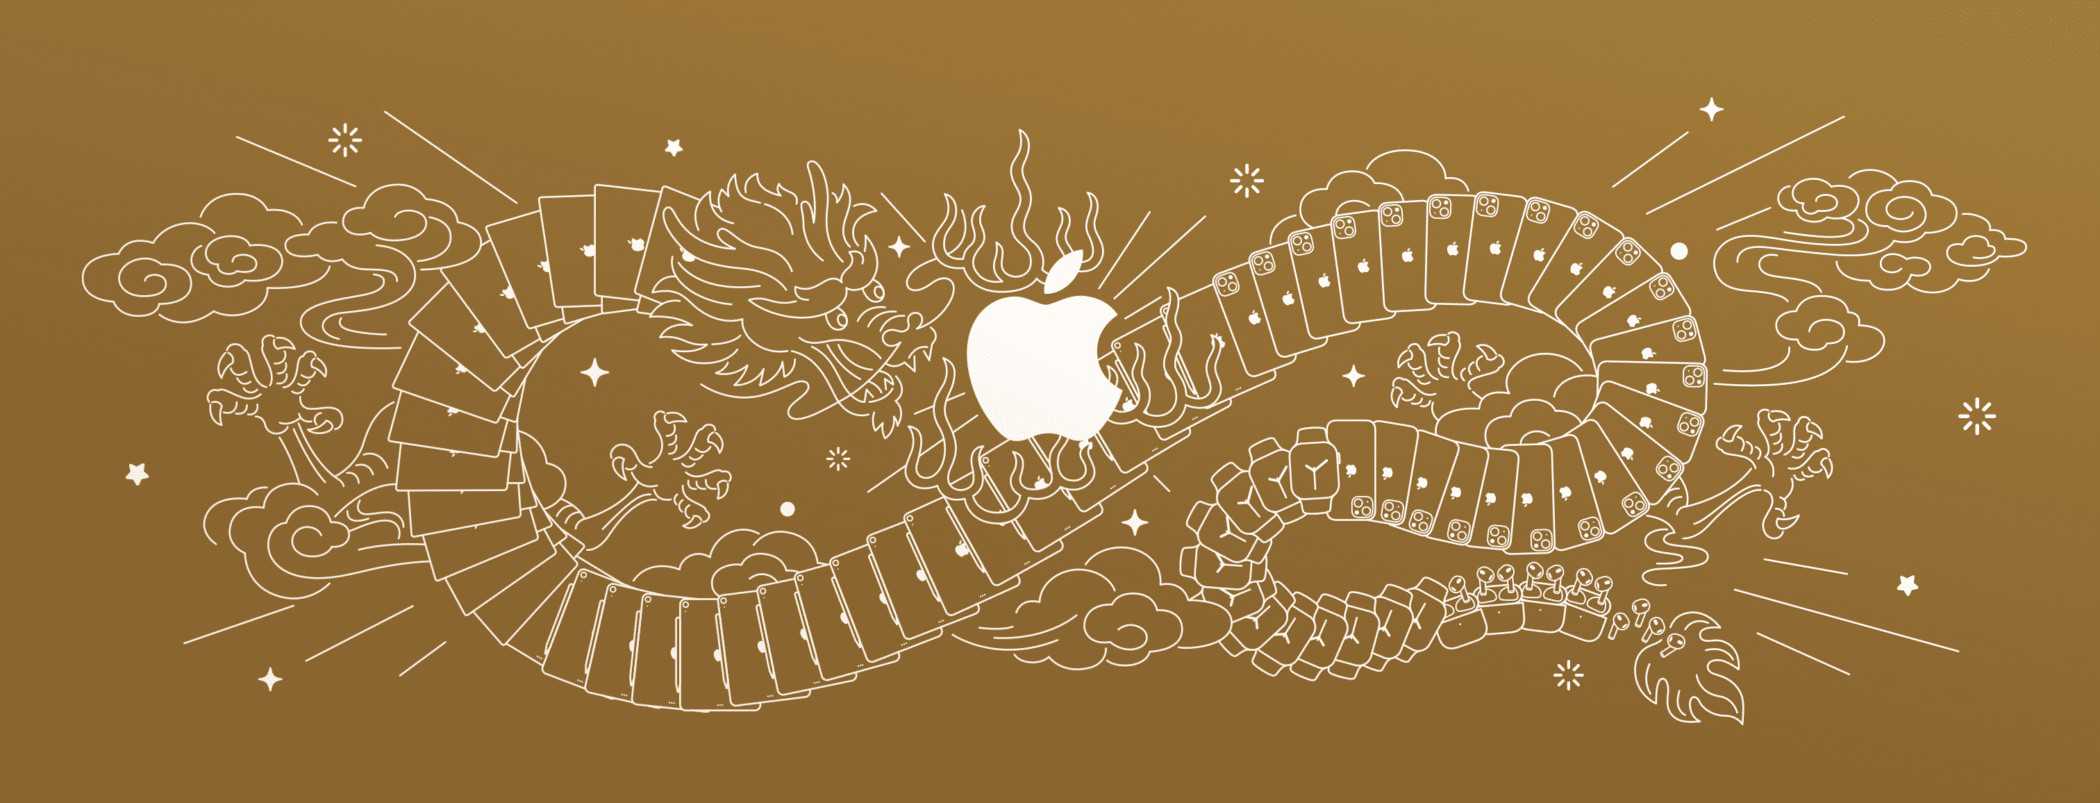 Apple、中国での需要低迷を受け旧正月前にiPhone、iPad、Macを値下げ